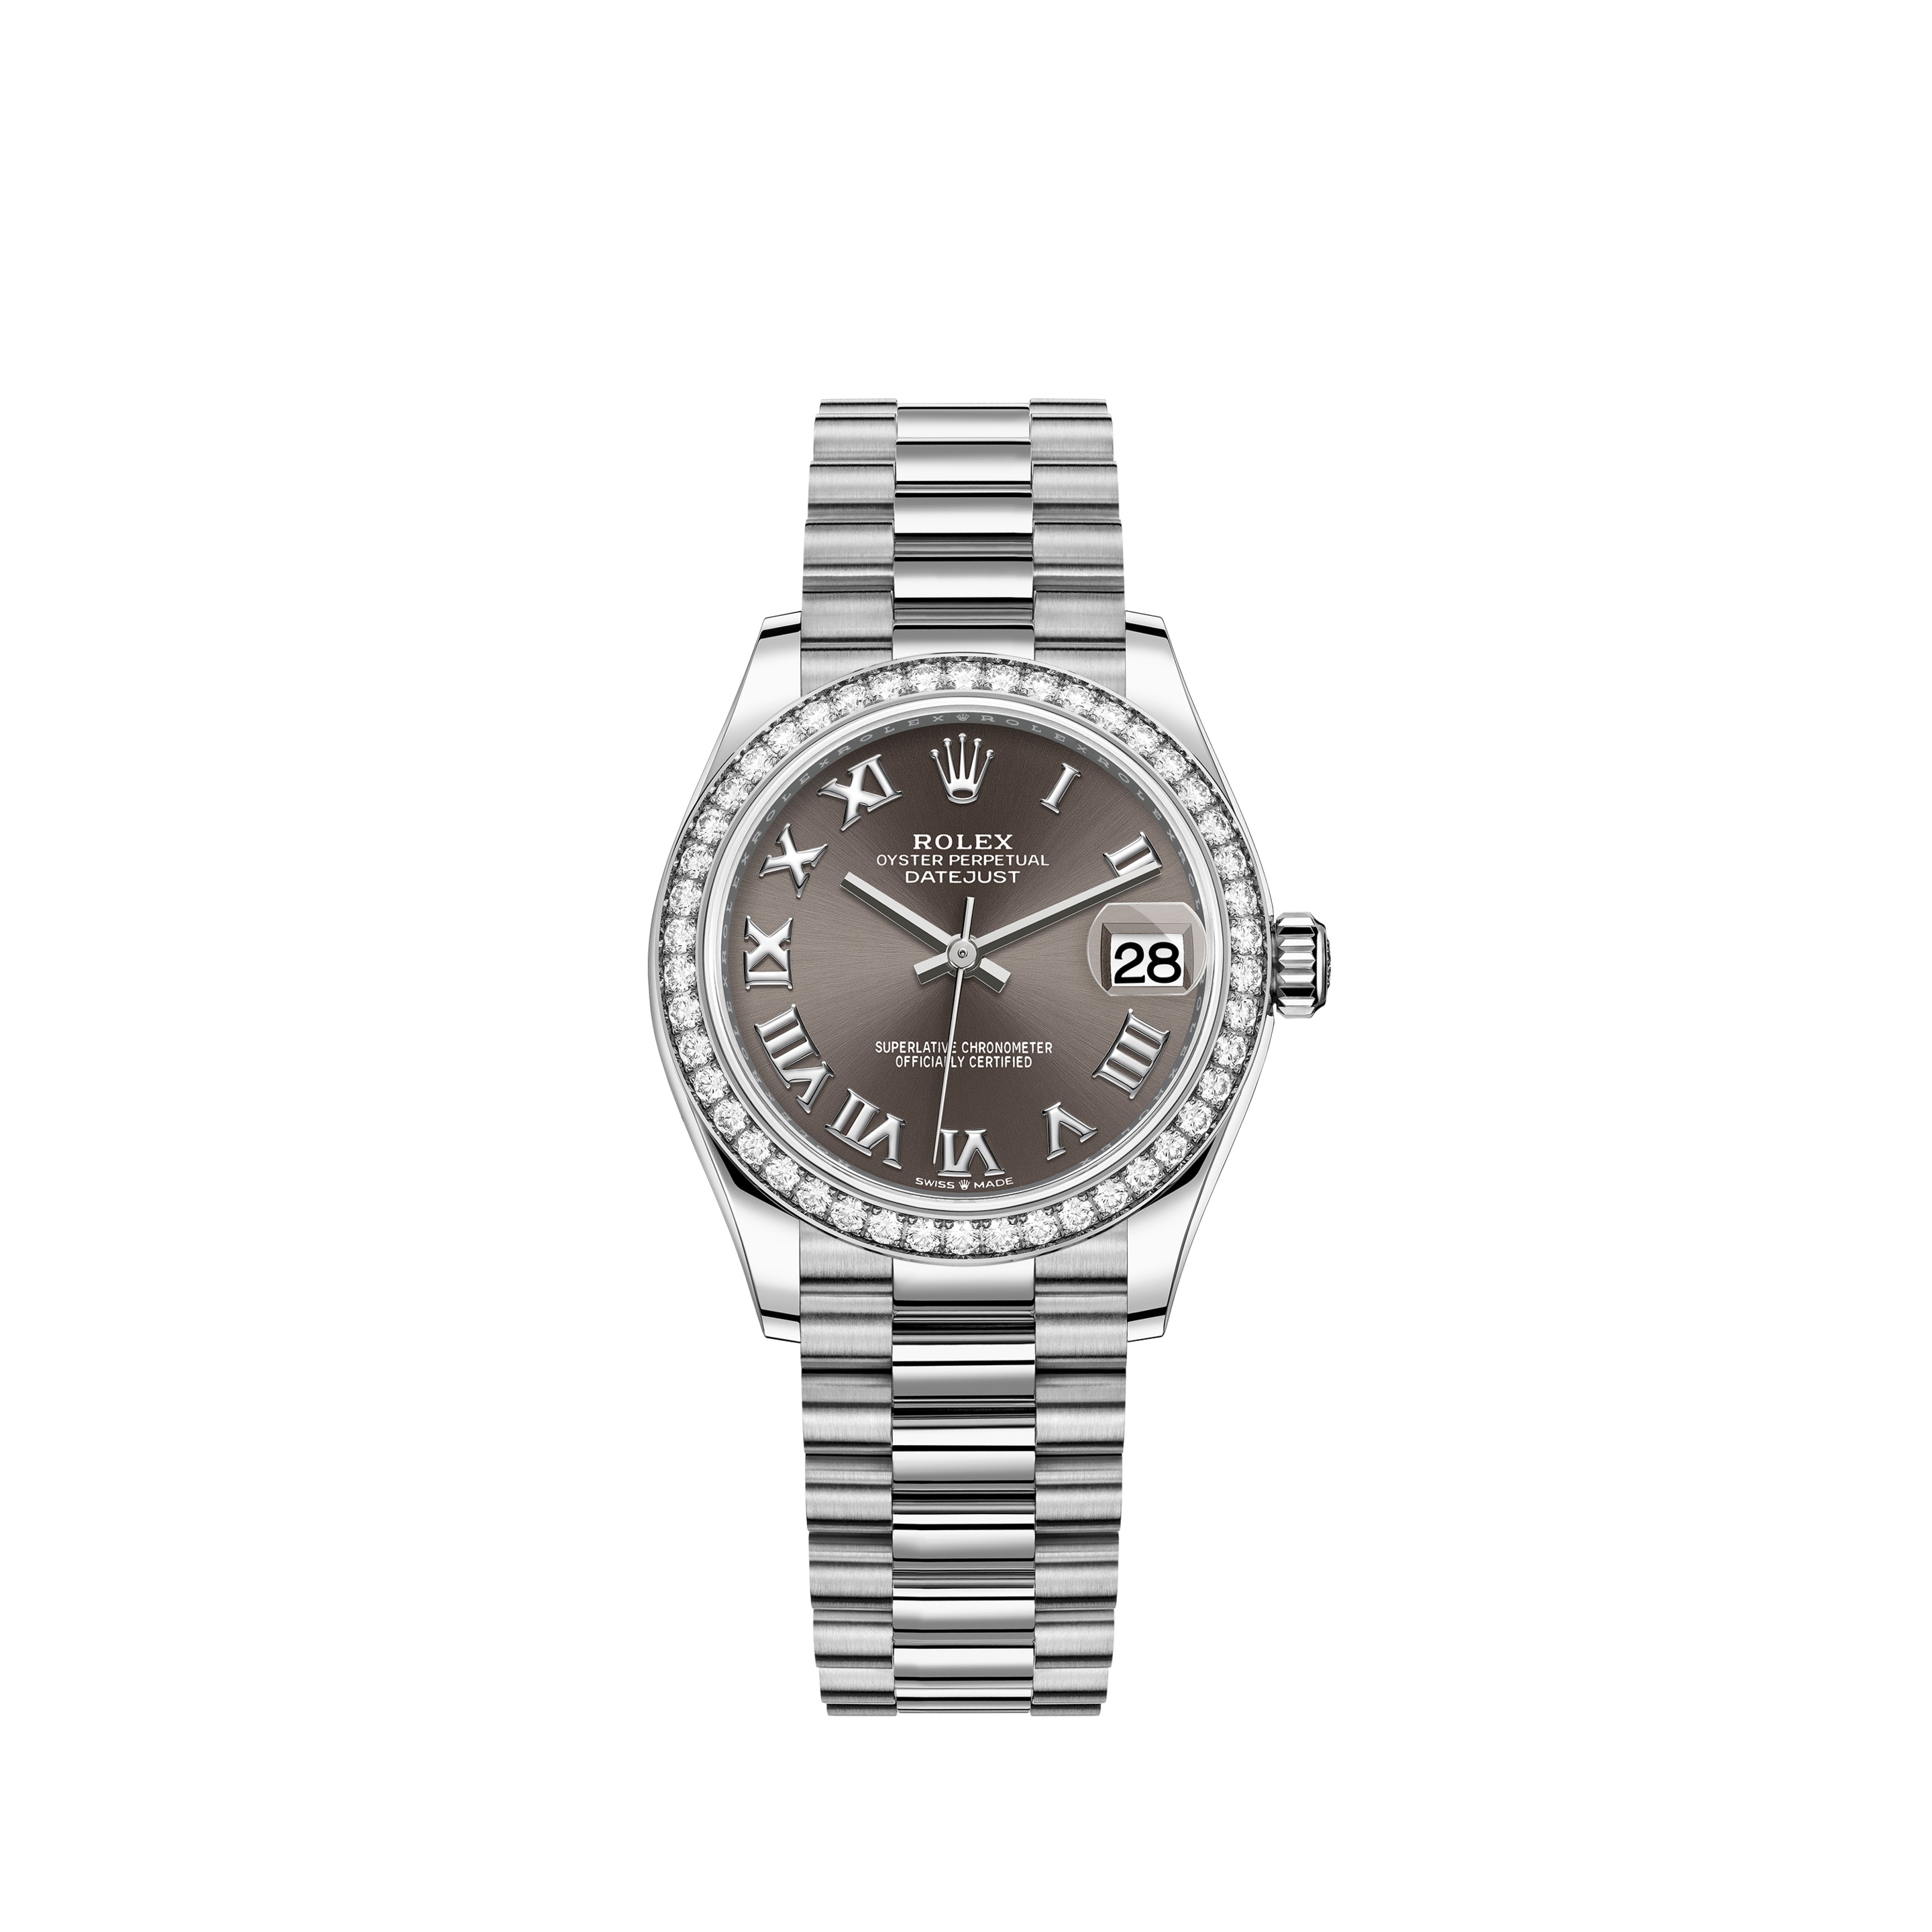 Datejust 31 278289RBR White Gold Watch (Dark Grey)